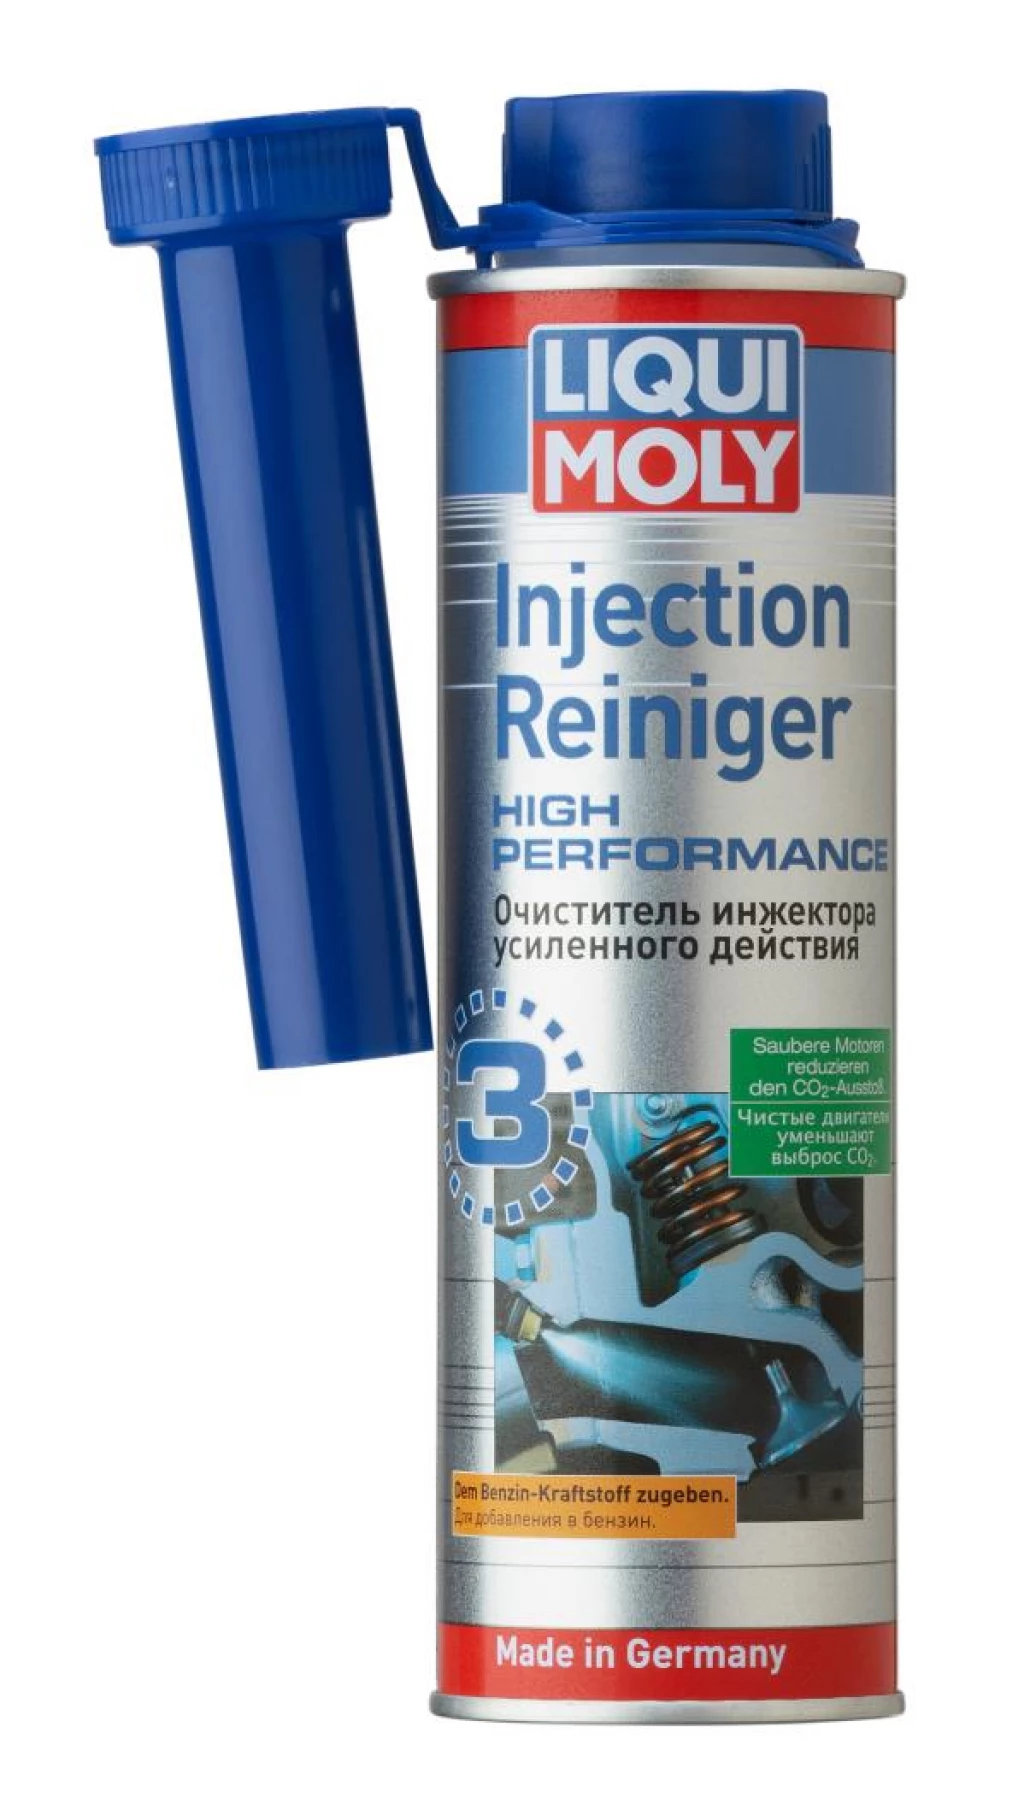 Очиститель инжекторов усиленного действия Liqui Moly Injection Reiniger High Performance 300 мл